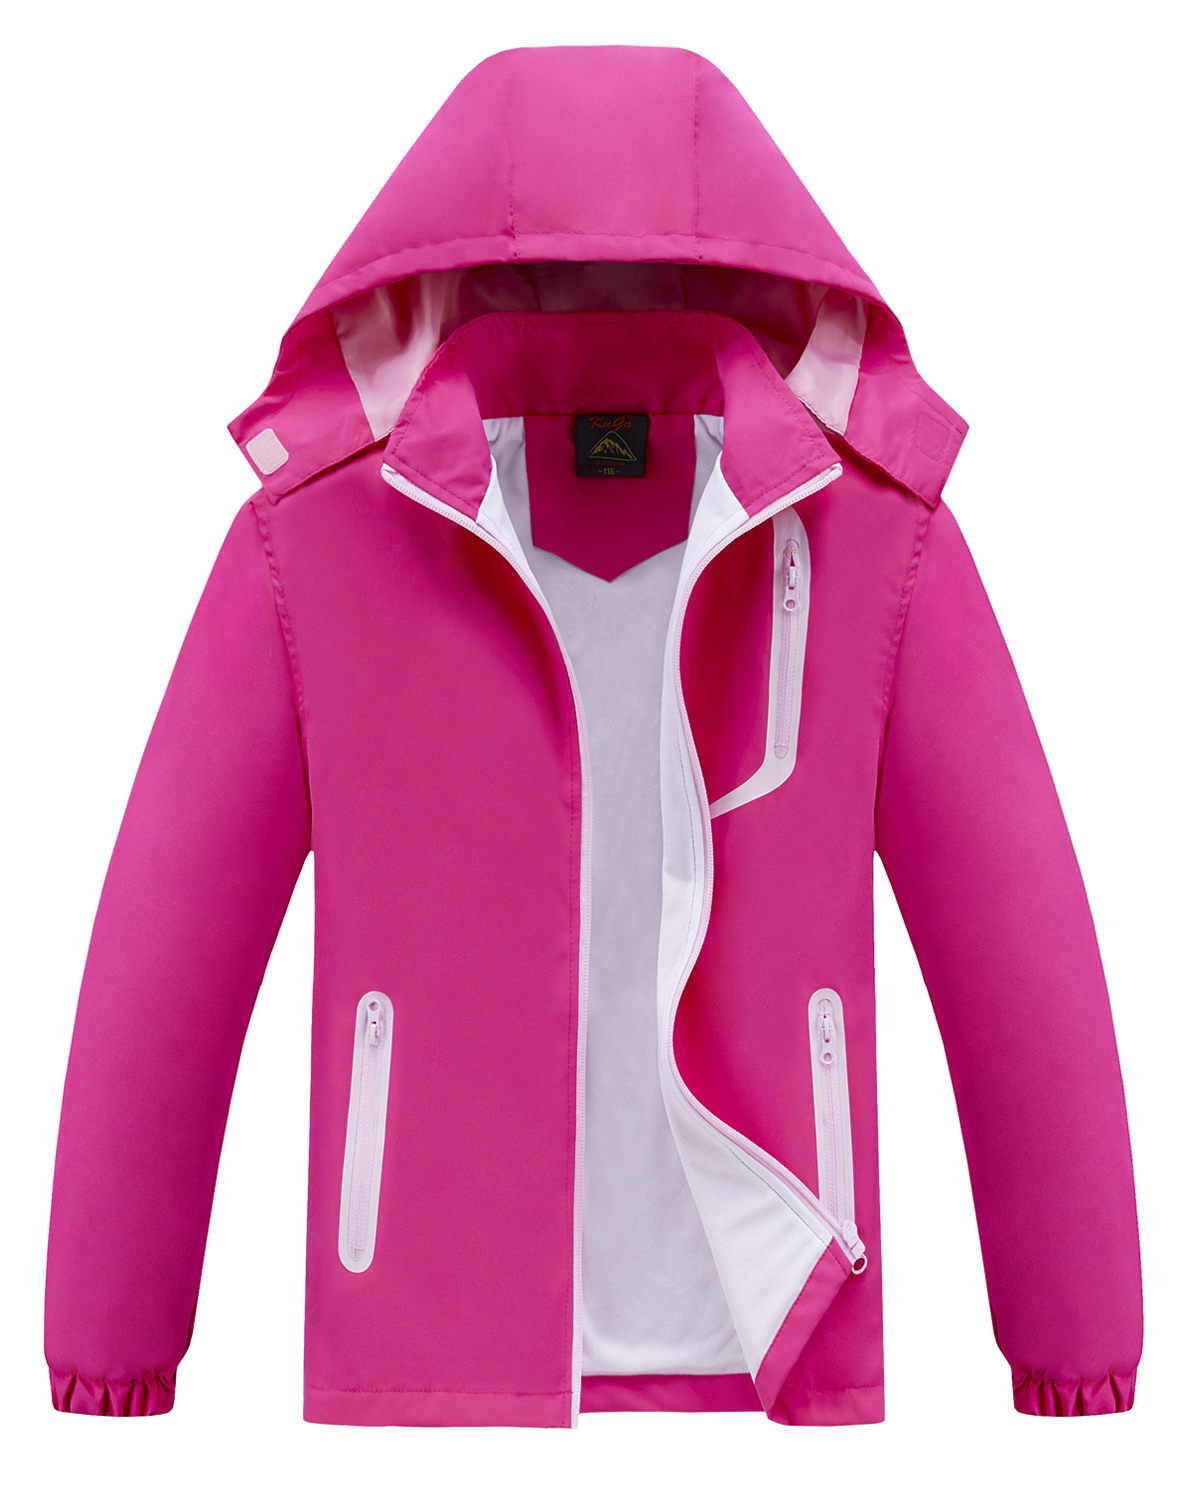 Dívčí jarní, podzimní bunda - KUGO B2868, růžová Barva: Růžová, Velikost: 116